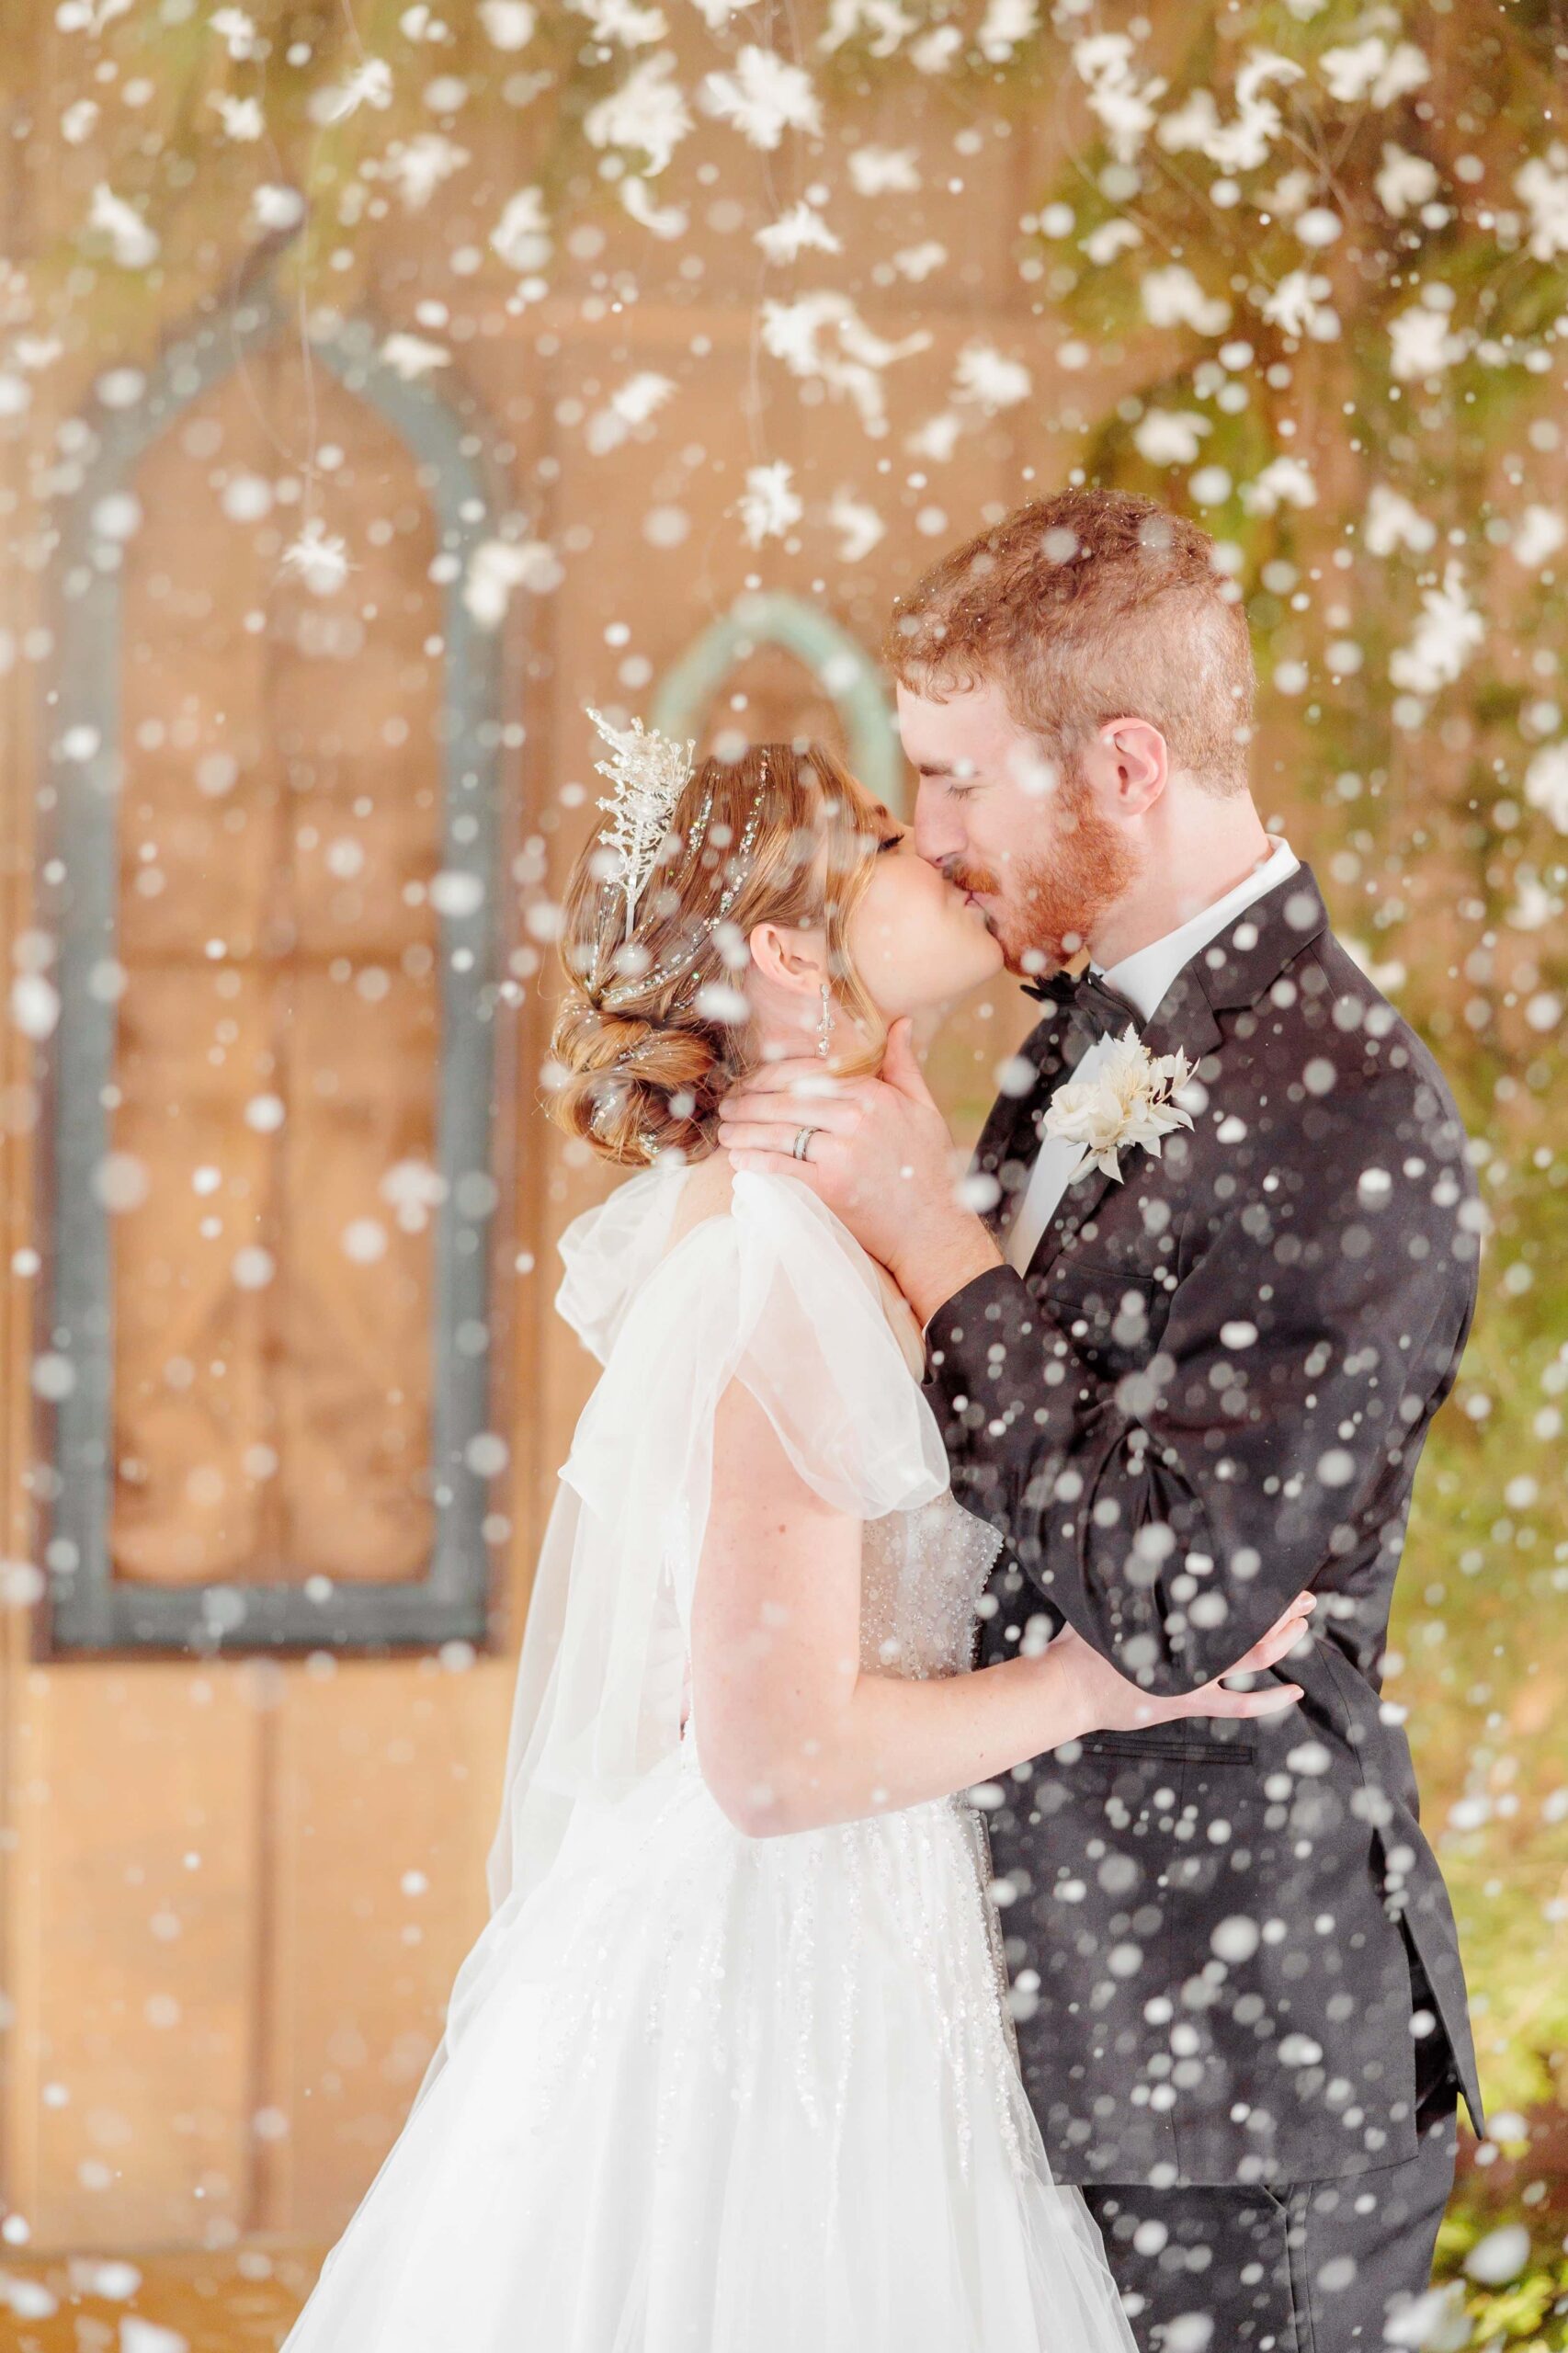 Liz and Ryan kiss while snowflakes swirl around them at this winter wonderland wedding.